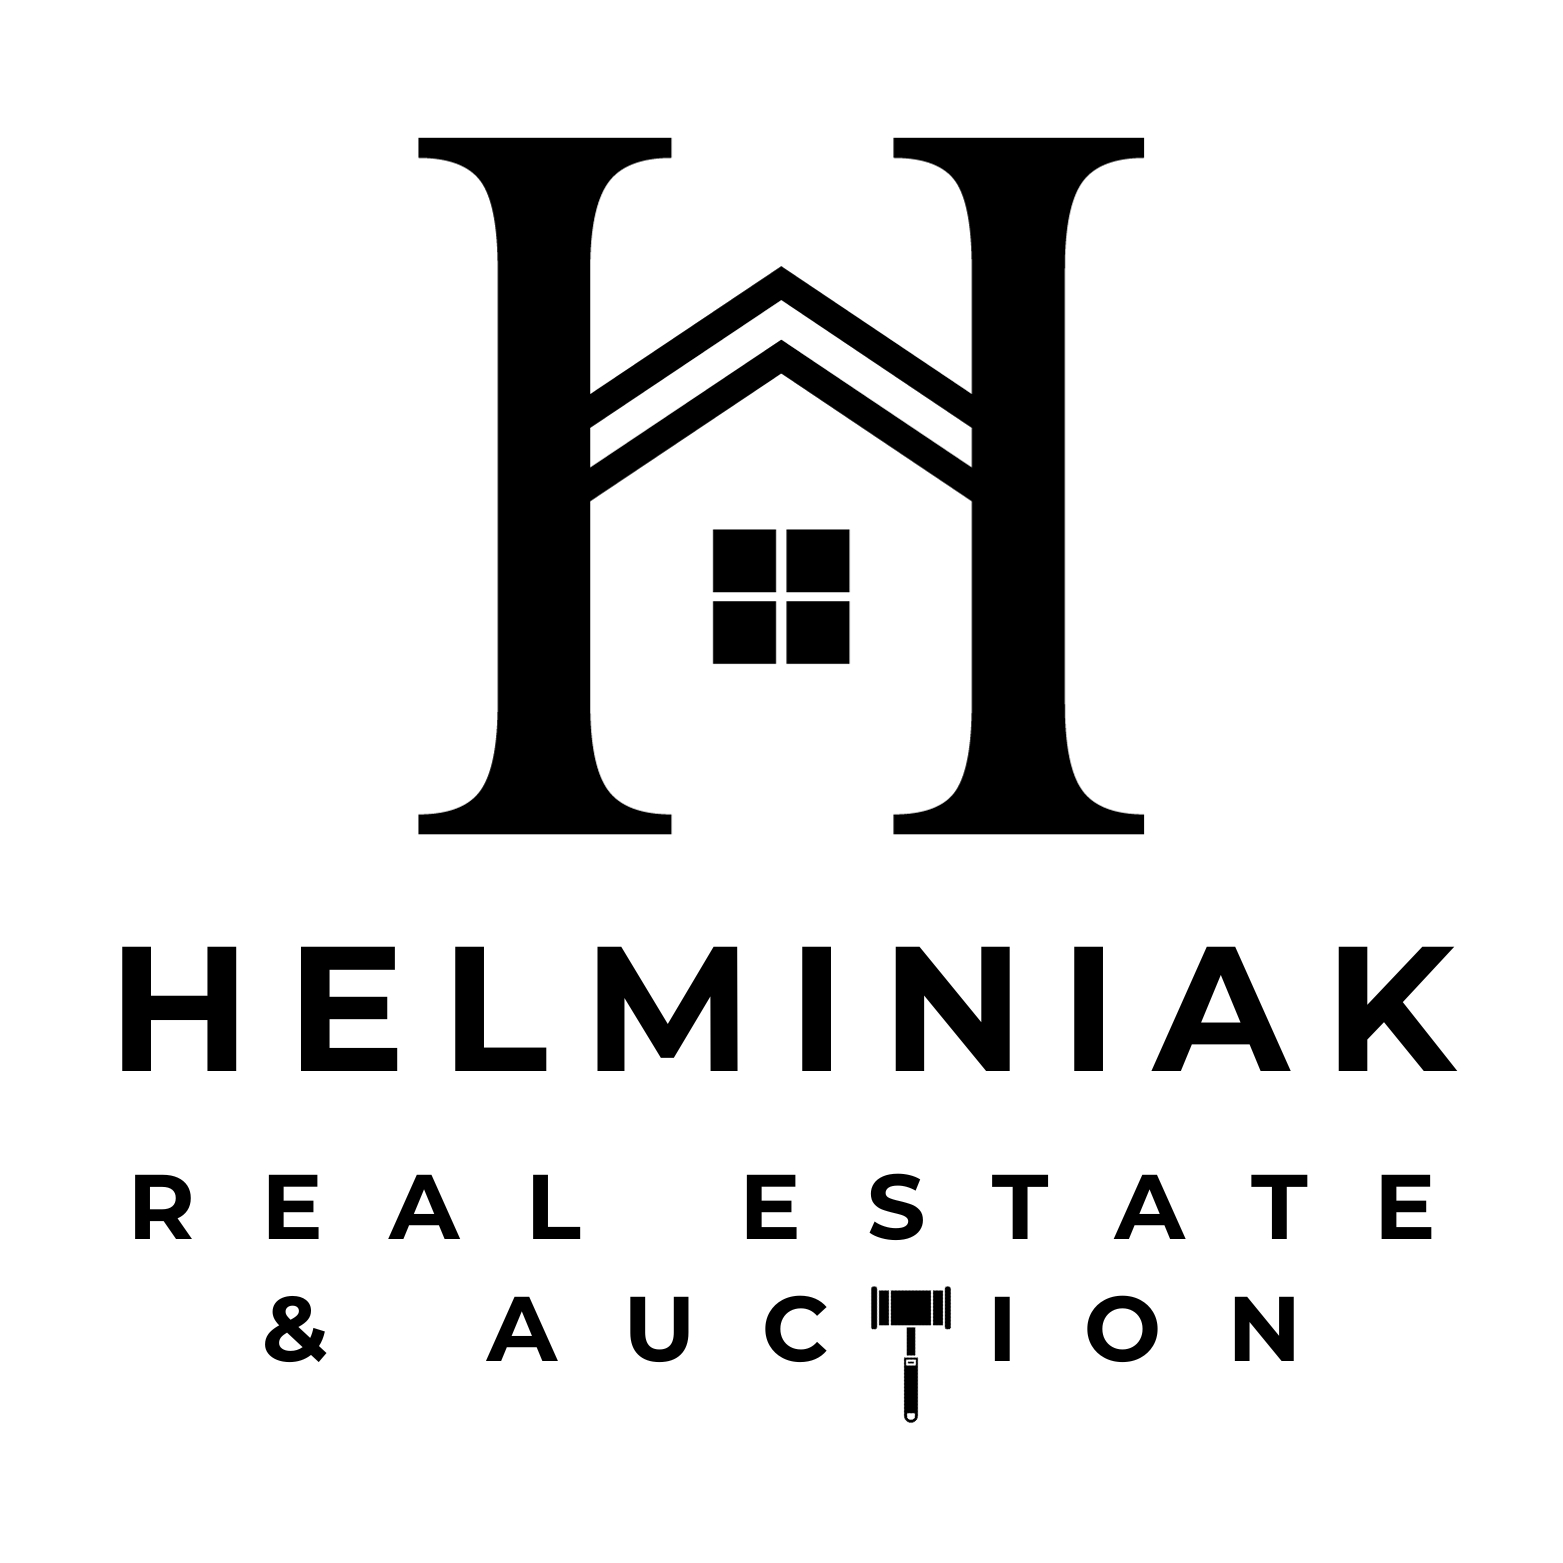 Helminiak Real Estate & Auction